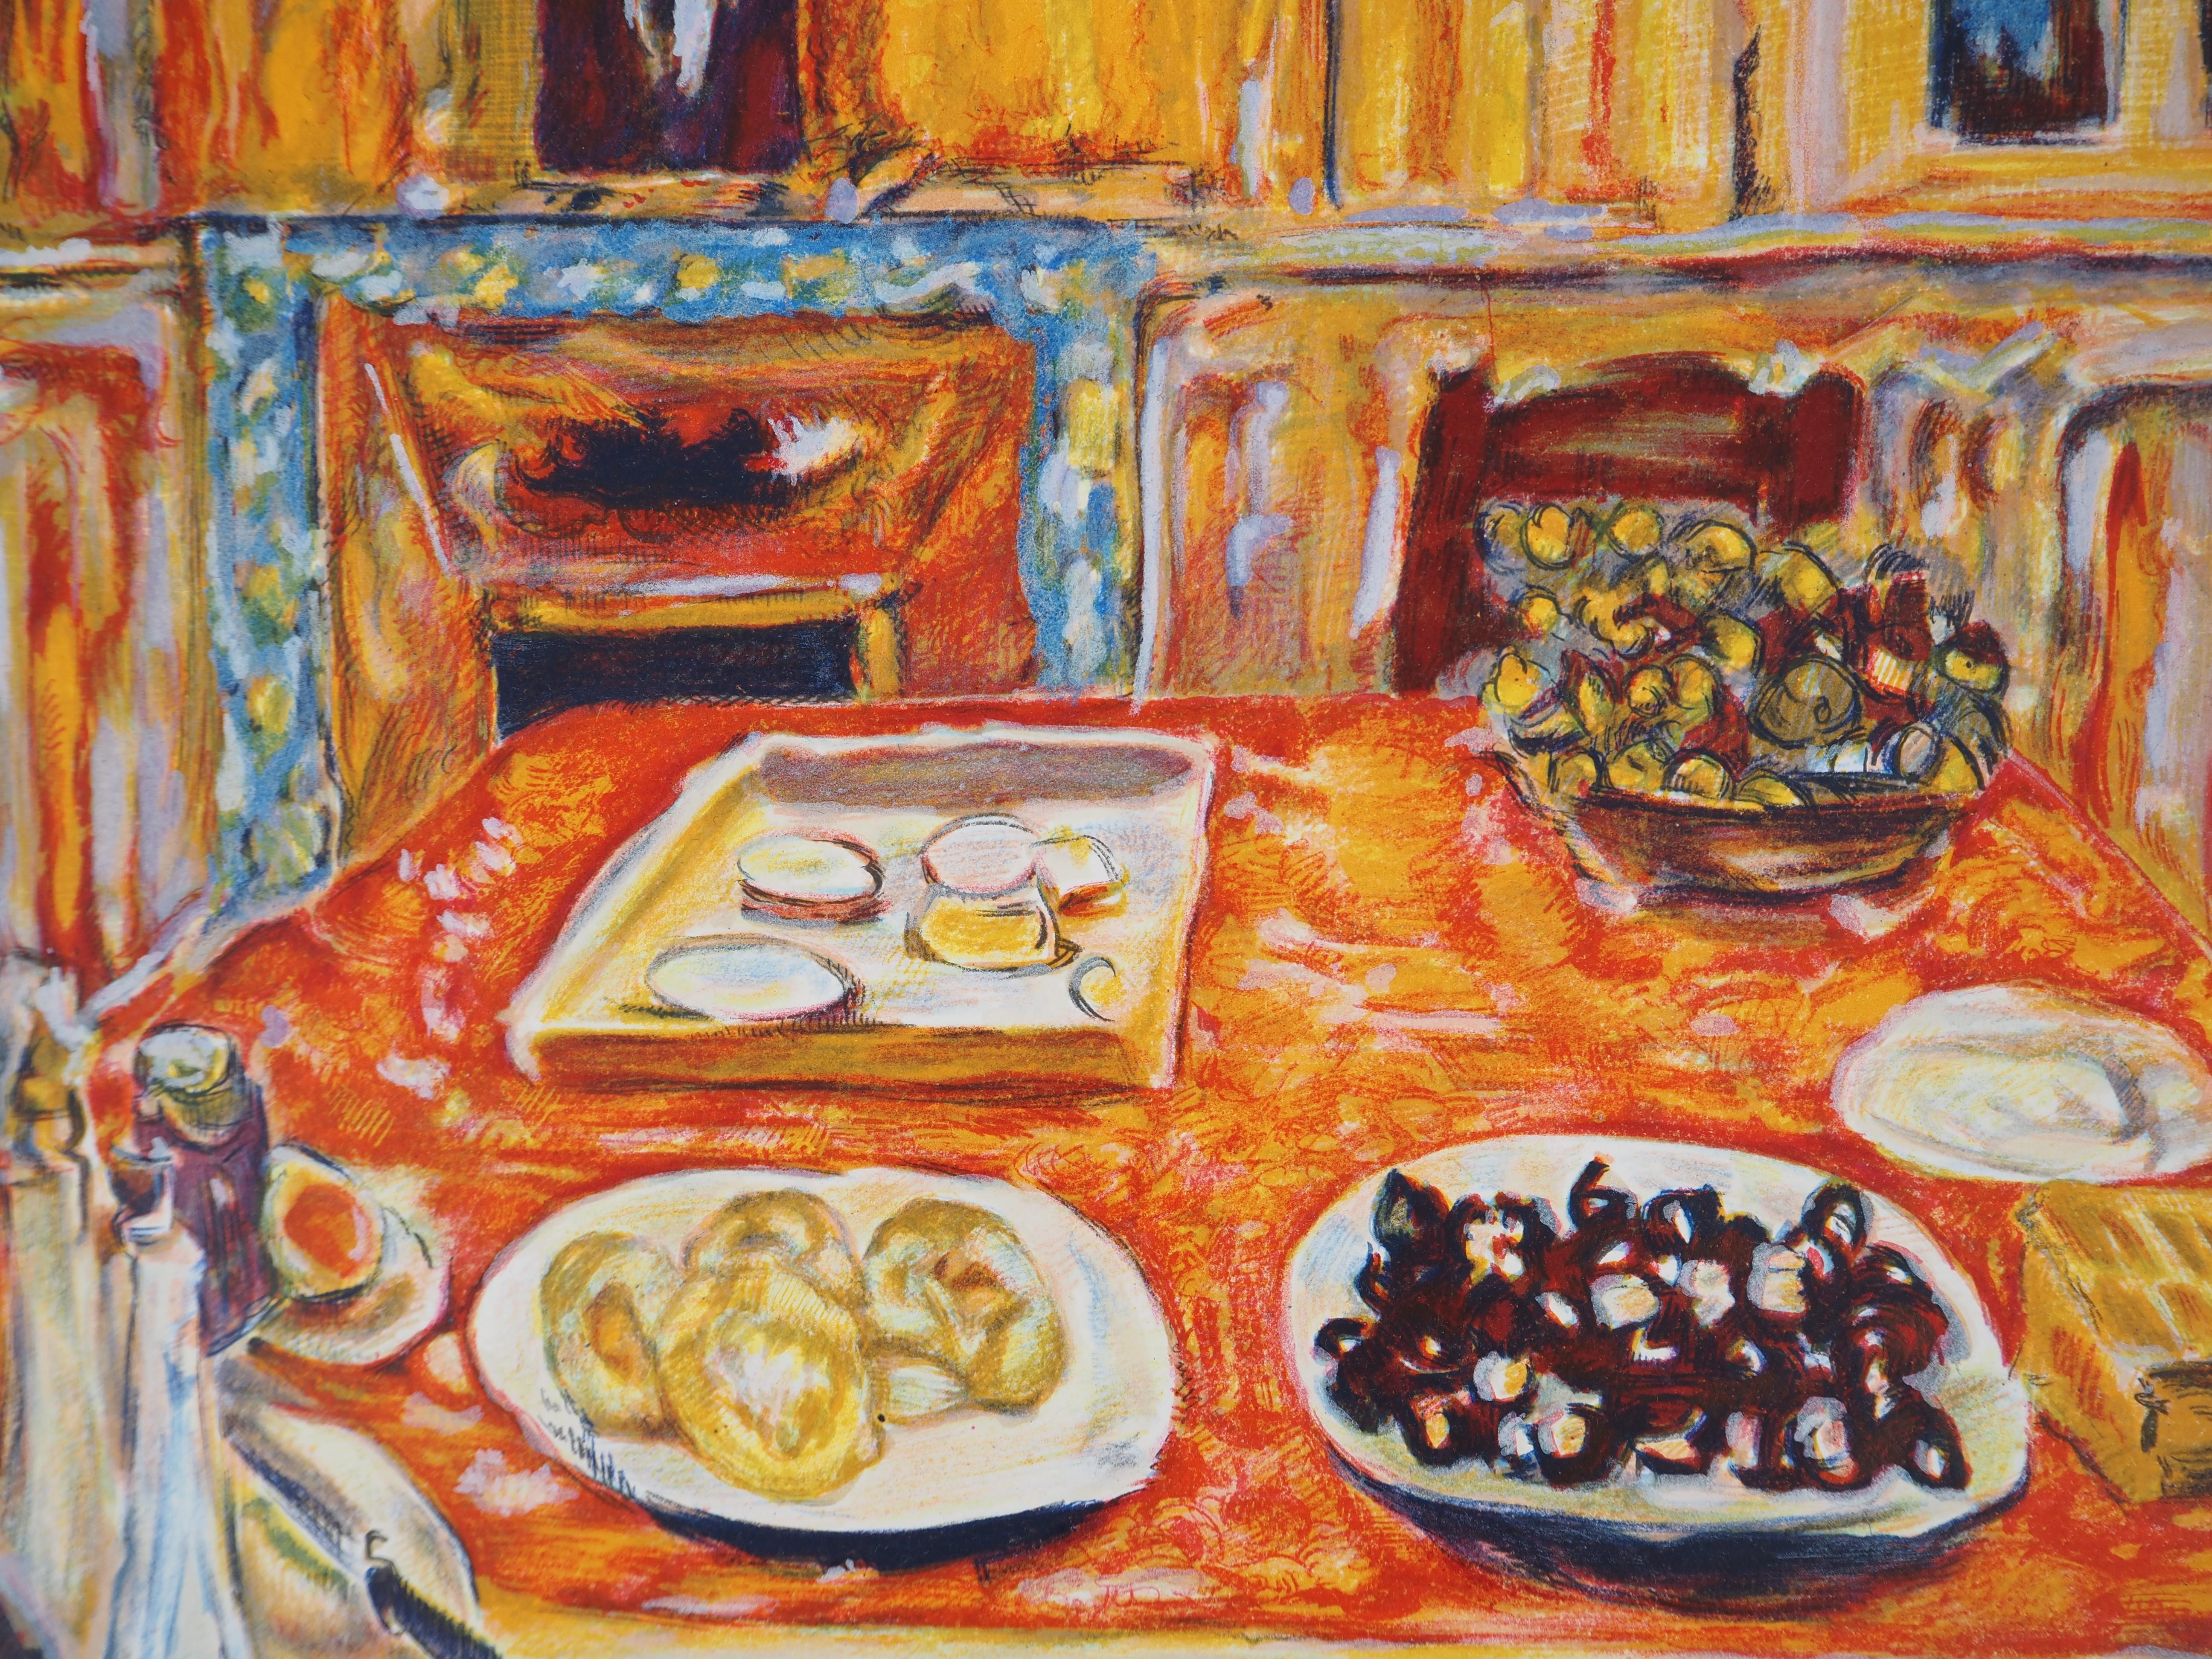 Pierre BONNARD
Fauvistisch : Abendessen in Orange, um 1950

Lithographie nach einem Gemälde des Künstlers (Werkstatt Mourlot)
Gedruckte Unterschrift auf der Platte
Auf Rives-Pergament 62 x 67,5 cm (ca. 25 x 27 Zoll)

Sehr guter Zustand, leichte